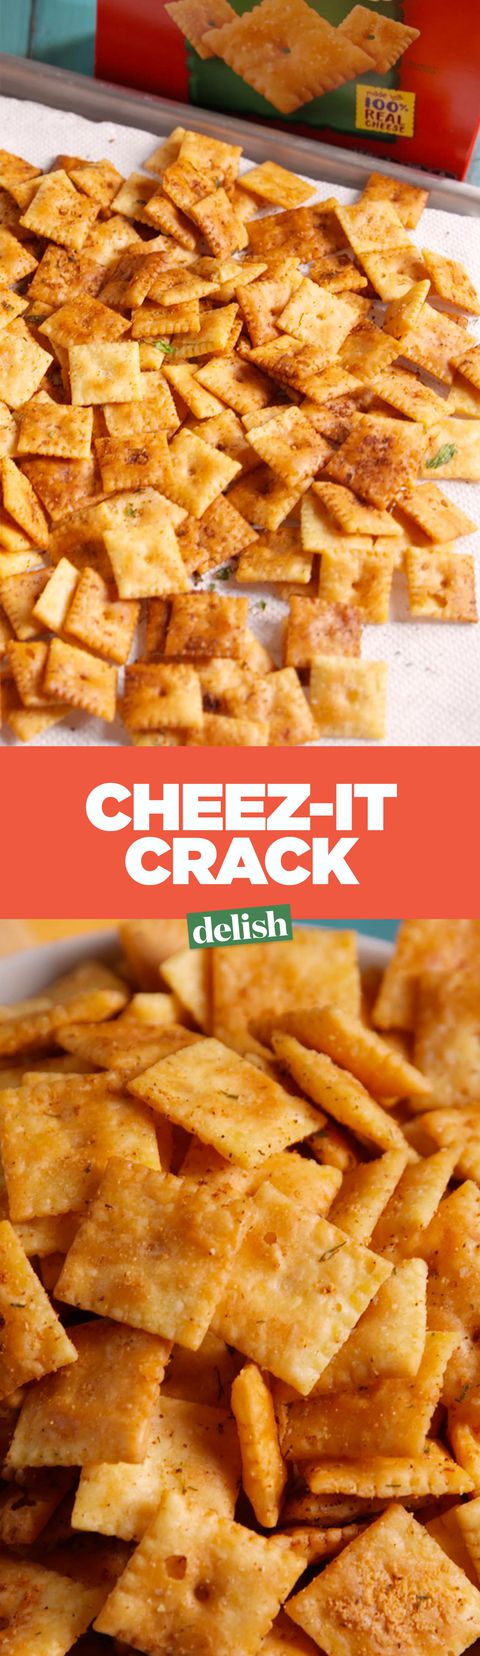 Cheez-It Crack Pinterest